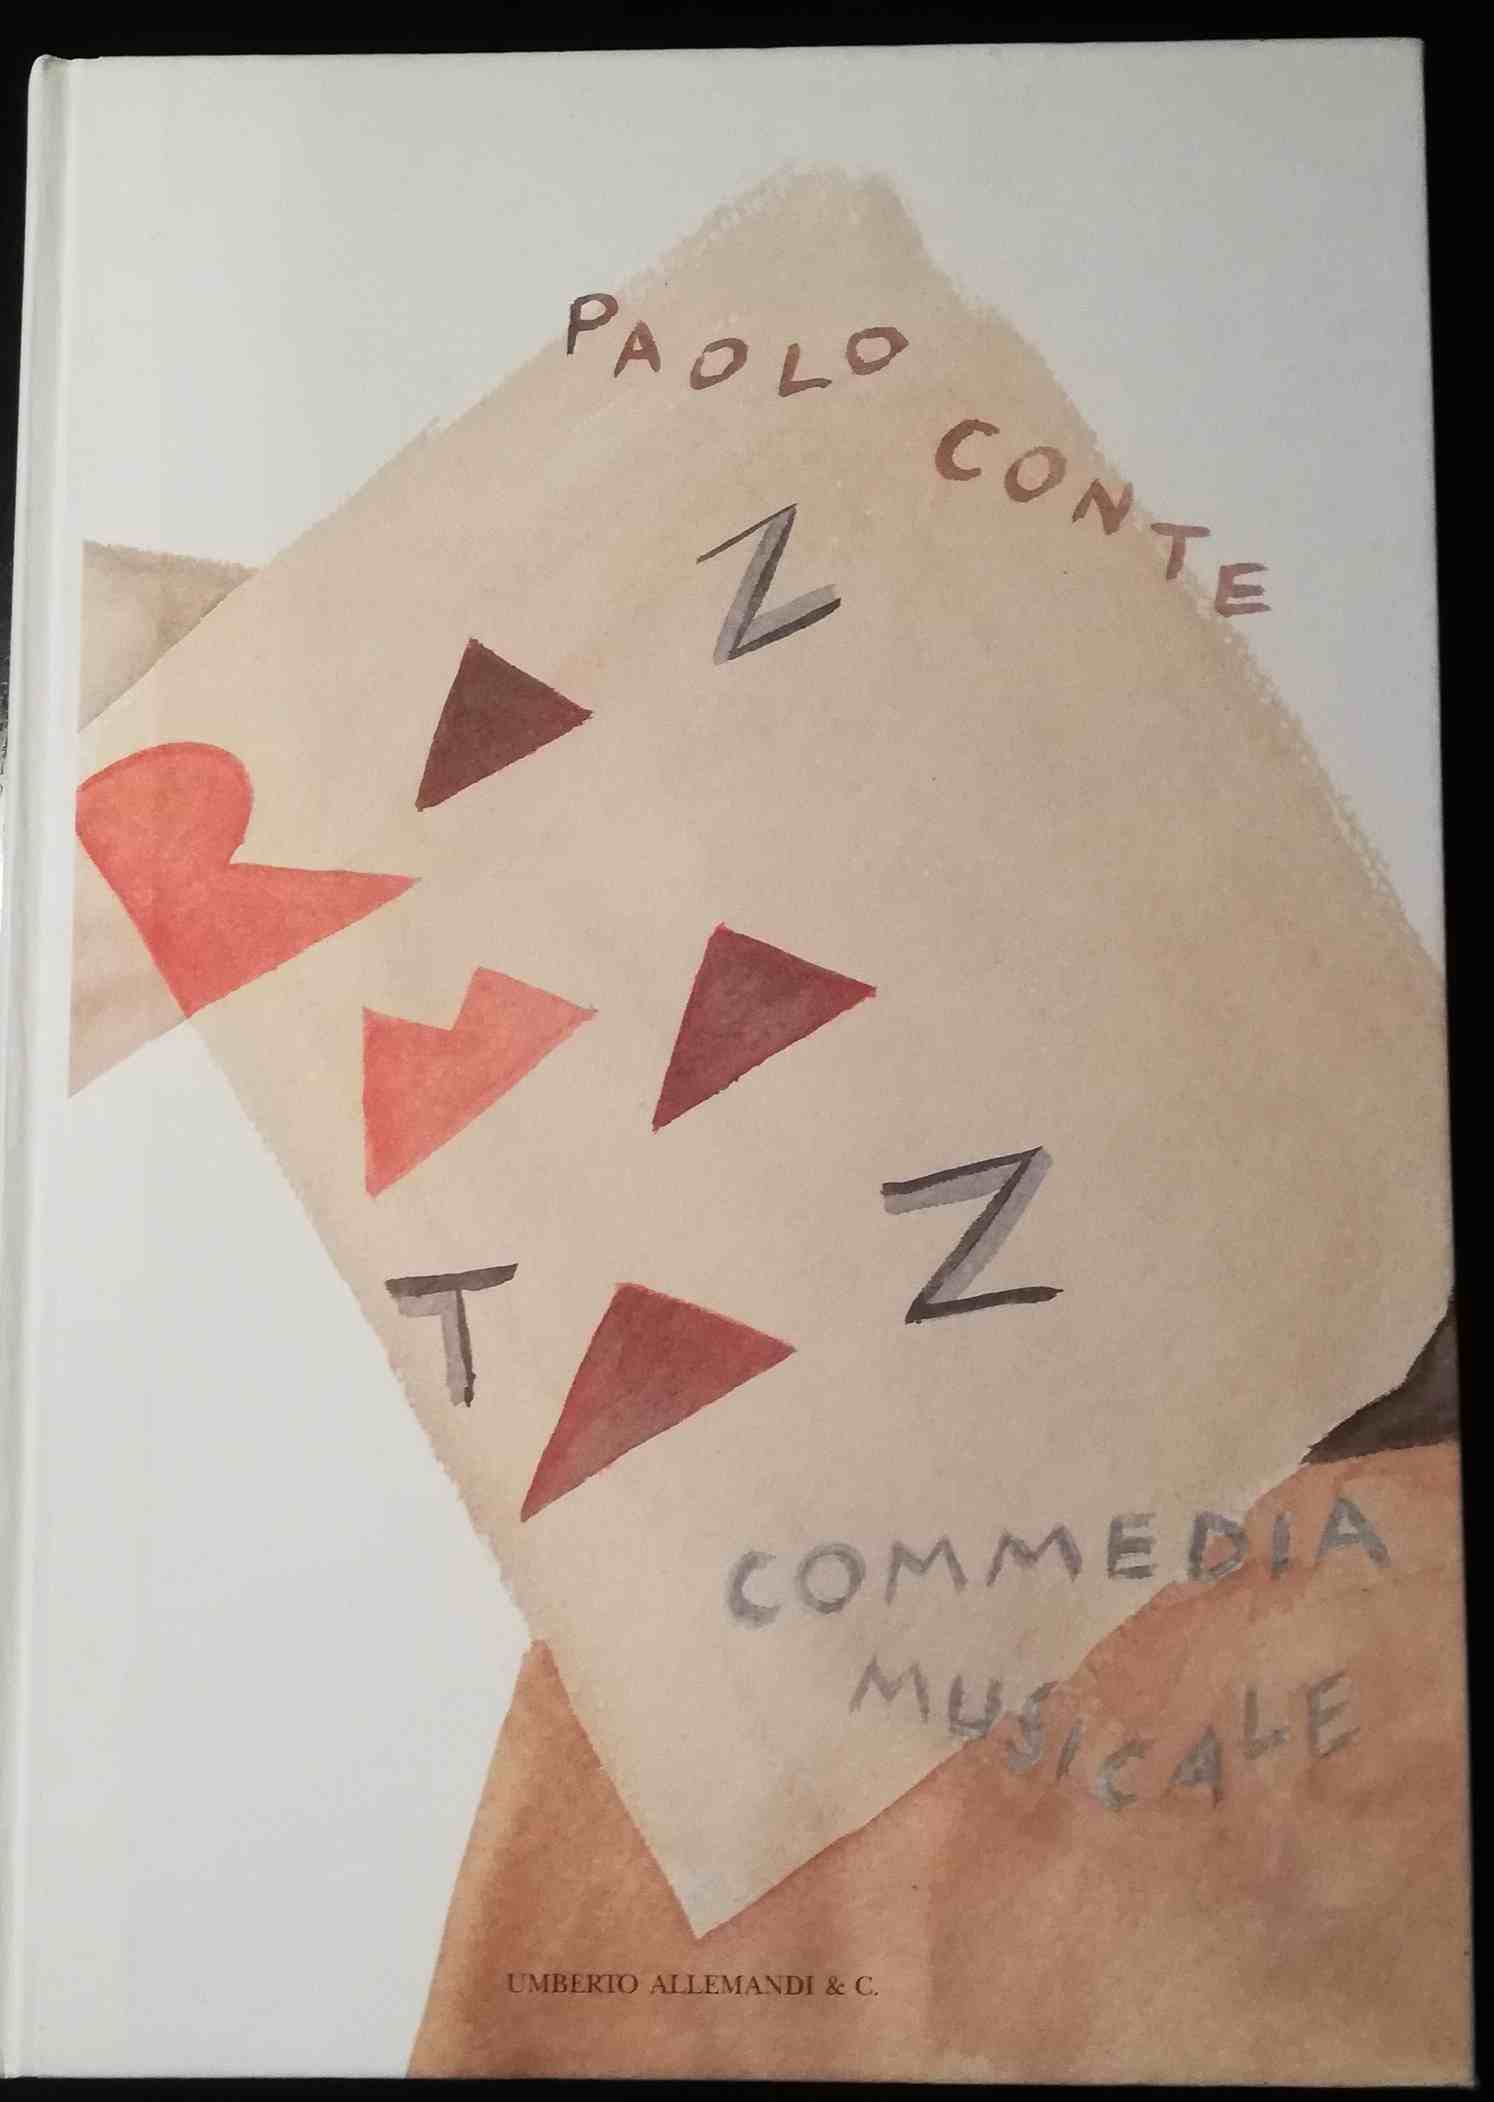 Razmataz. Commedia musicale - Conte, Paolo